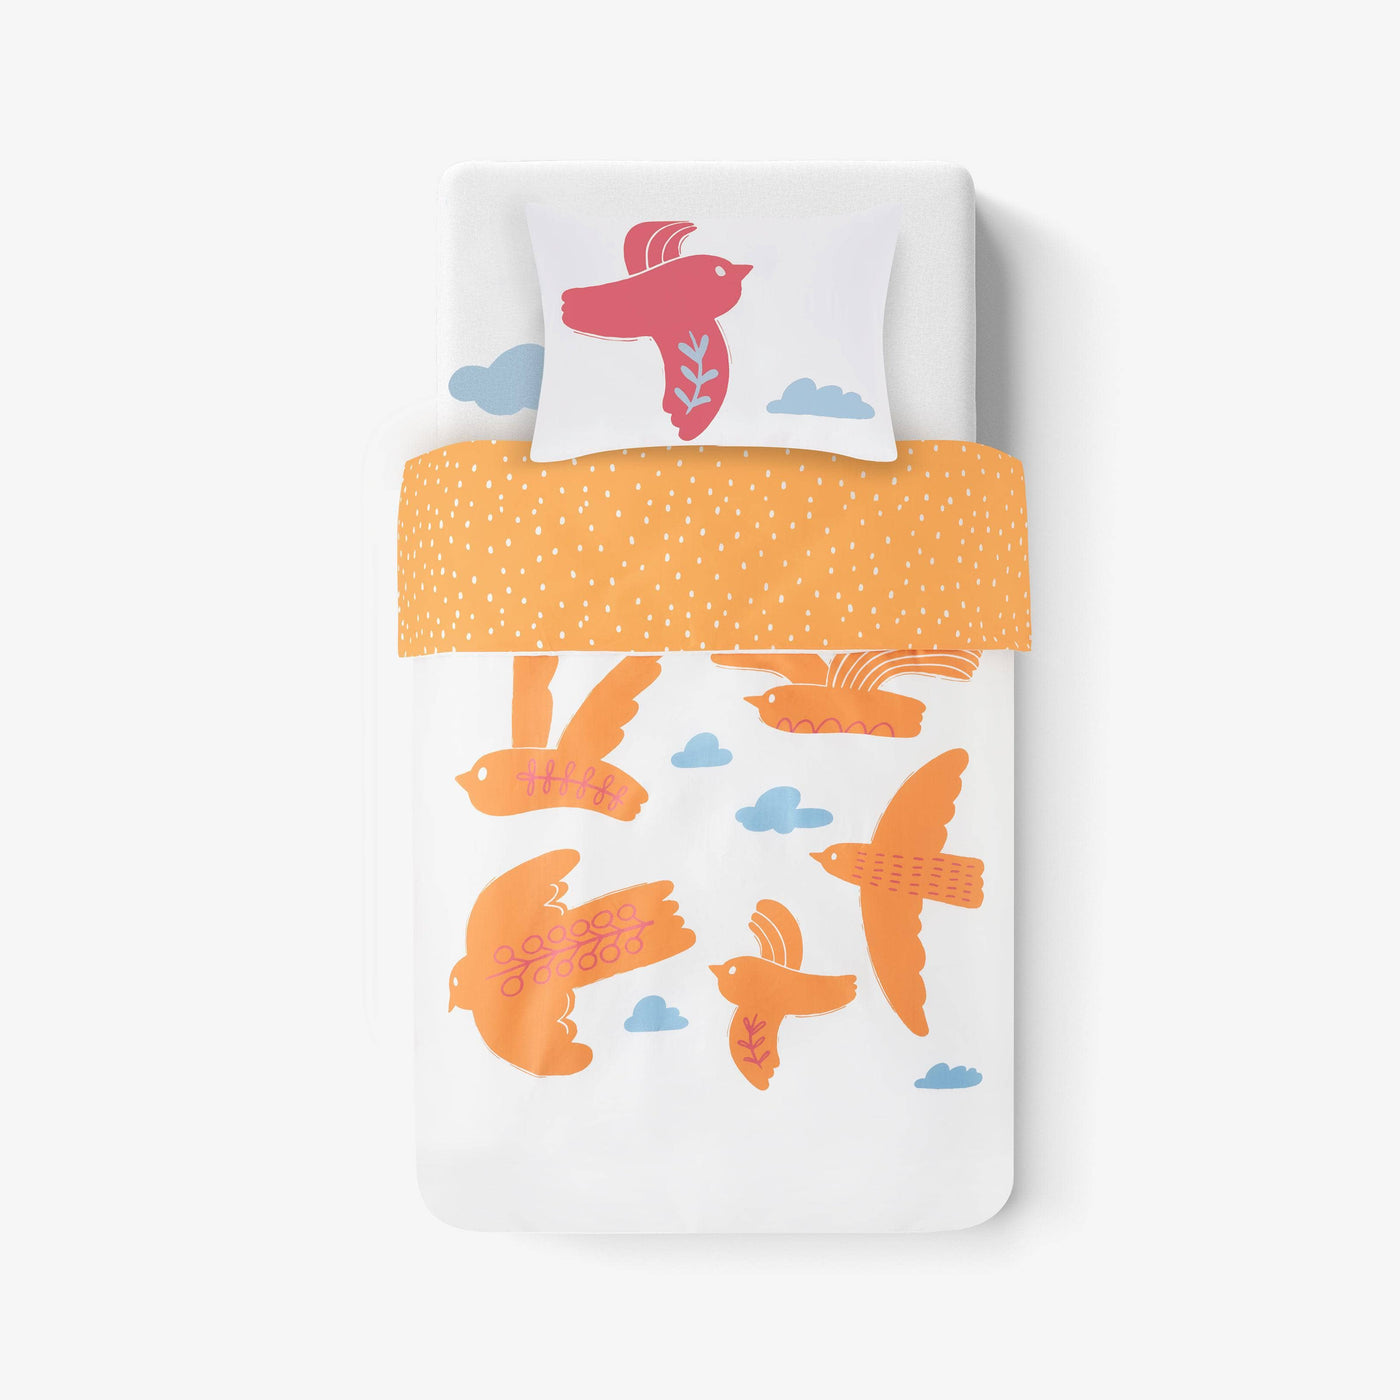 Bird Reversible Duvet Cover Set, Orange - White, 120x140 cm Kids Bedding sazy.com